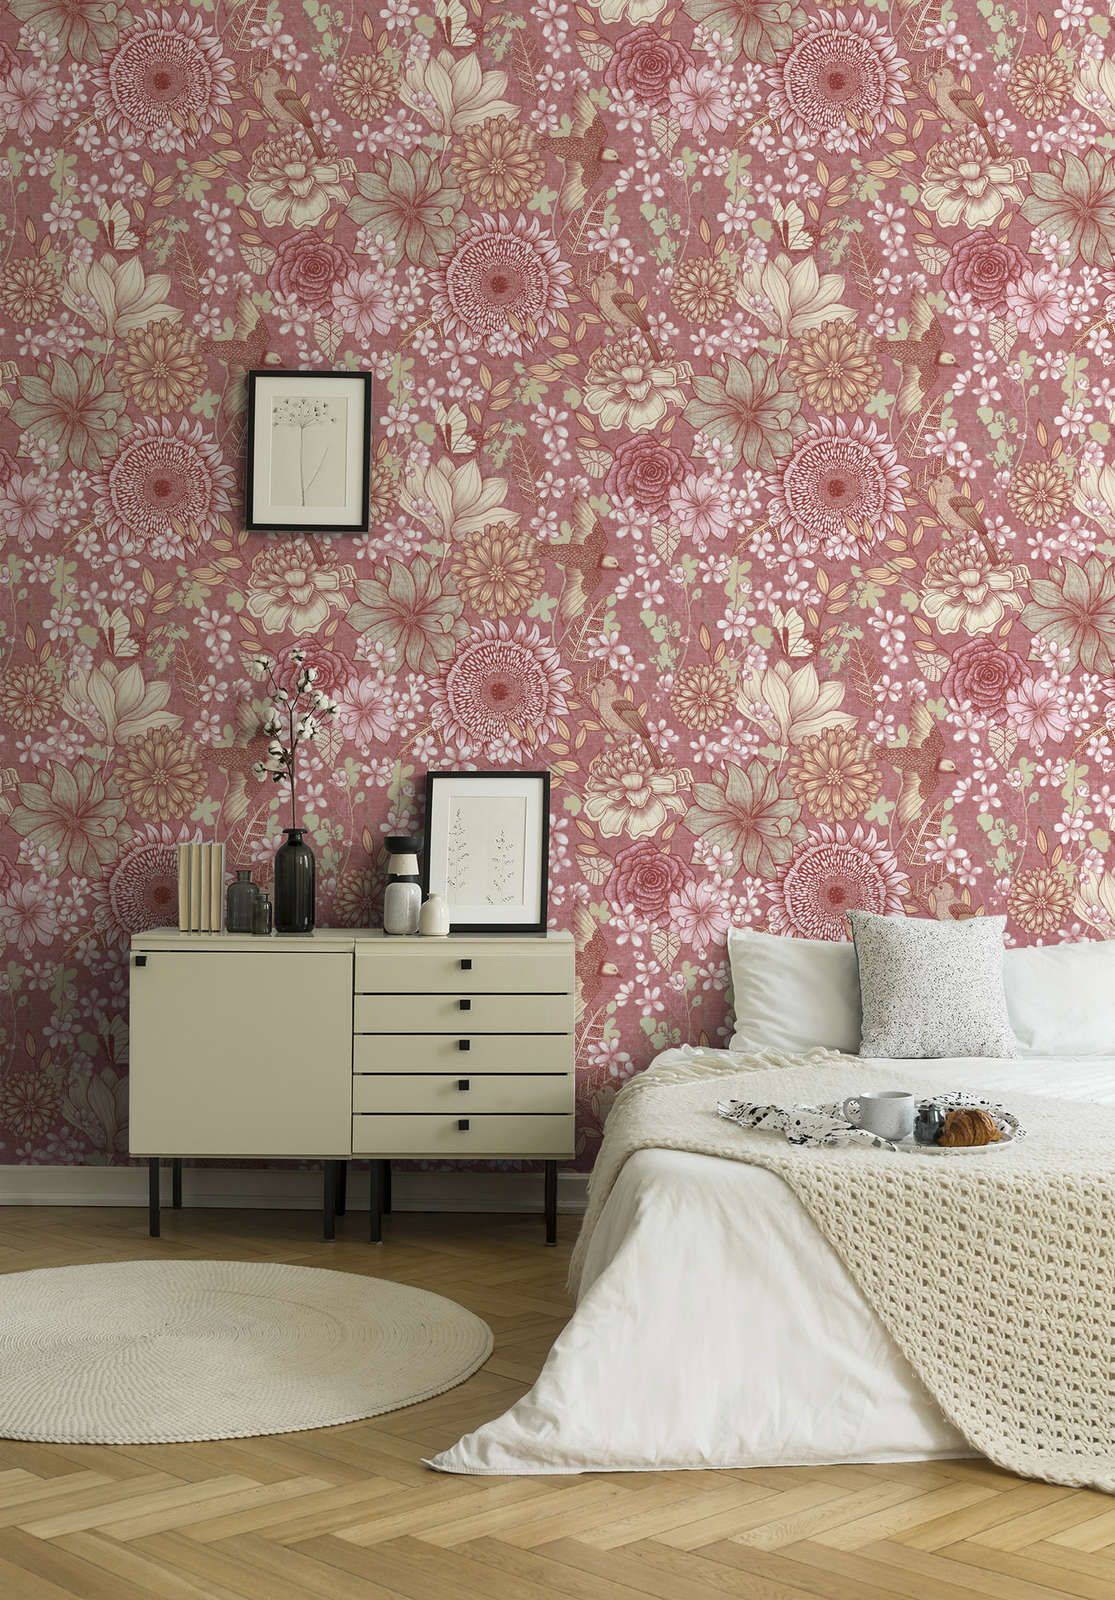             Papier peint intissé floral avec différentes fleurs et feuilles - rose, blanc, crème
        